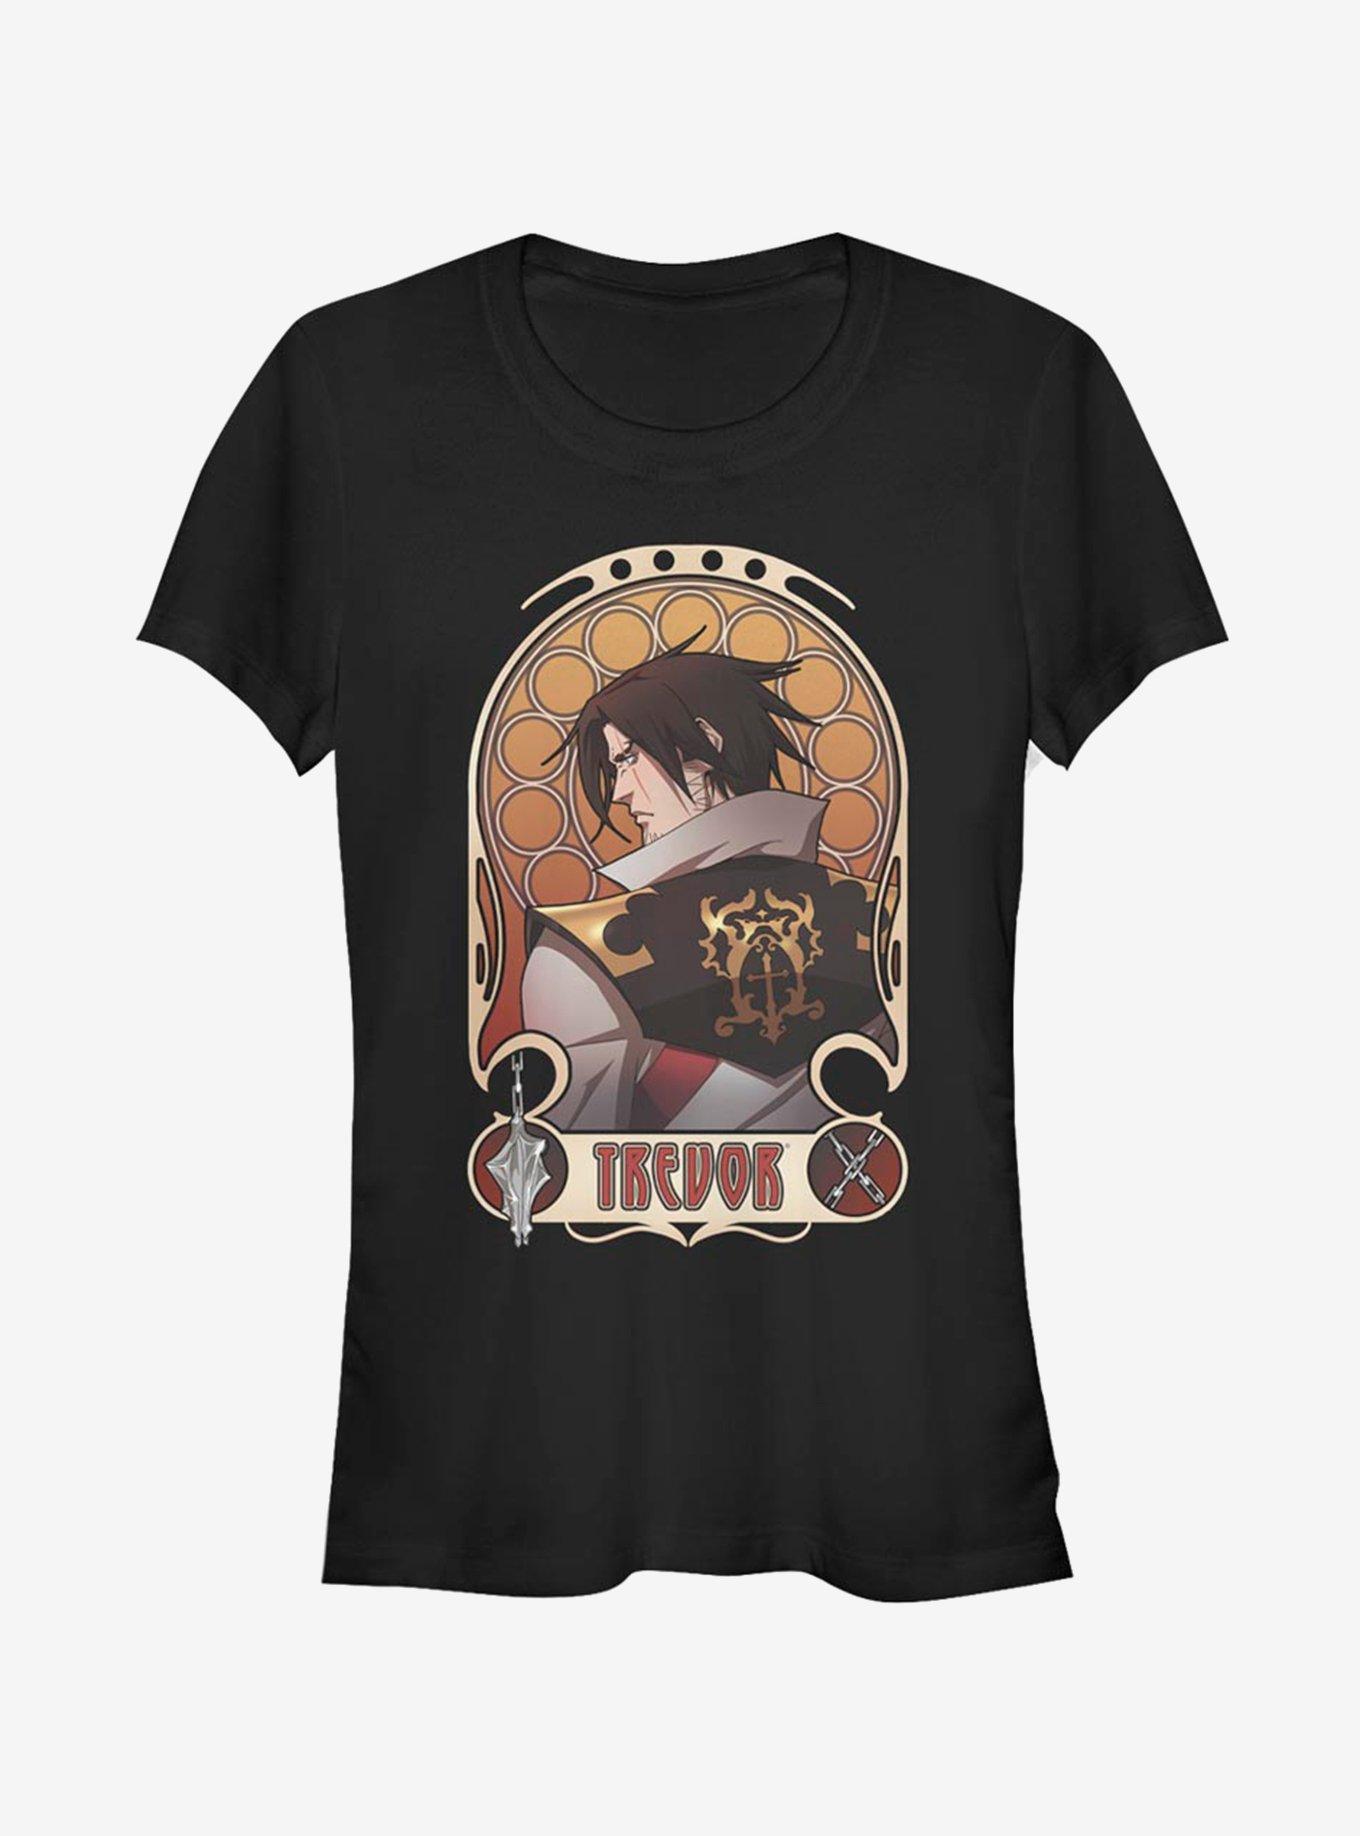 Castlevania Trevor Nouveau Girls T-Shirt, BLACK, hi-res